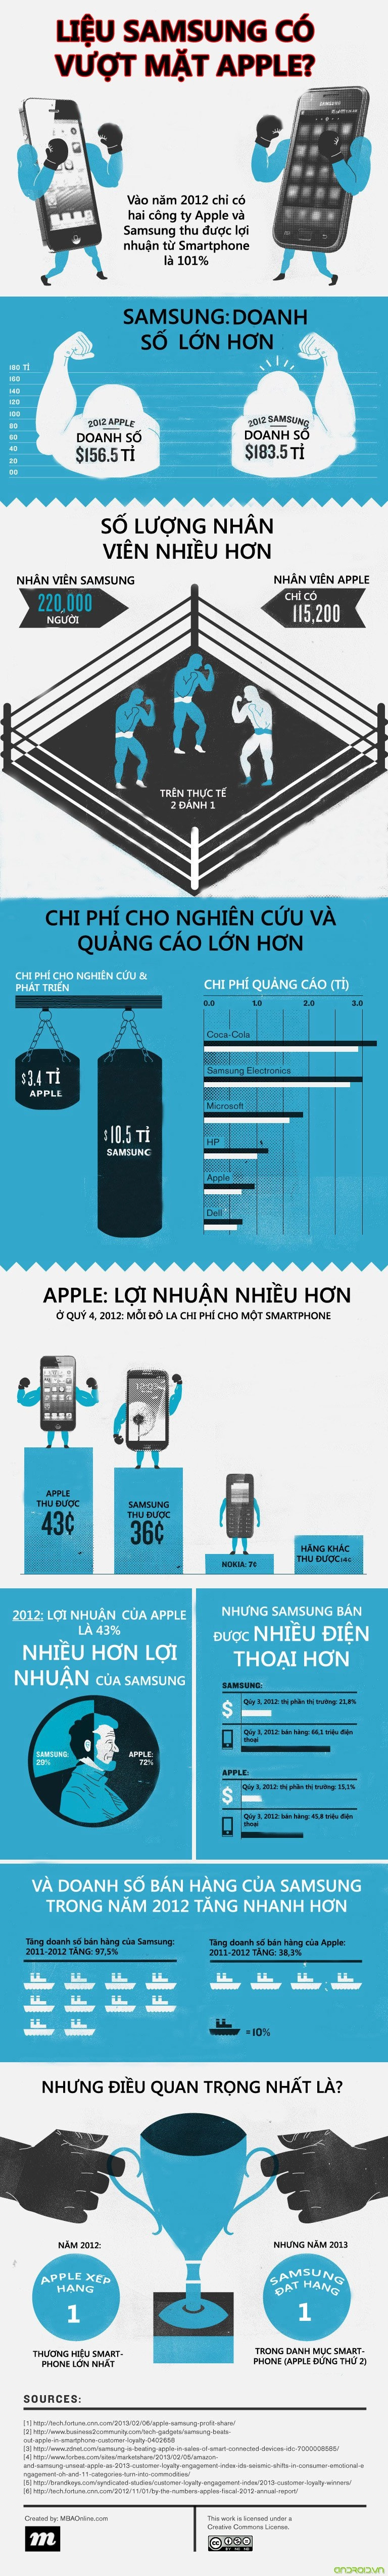 Infographic liệu samsung có vượt mặt apple